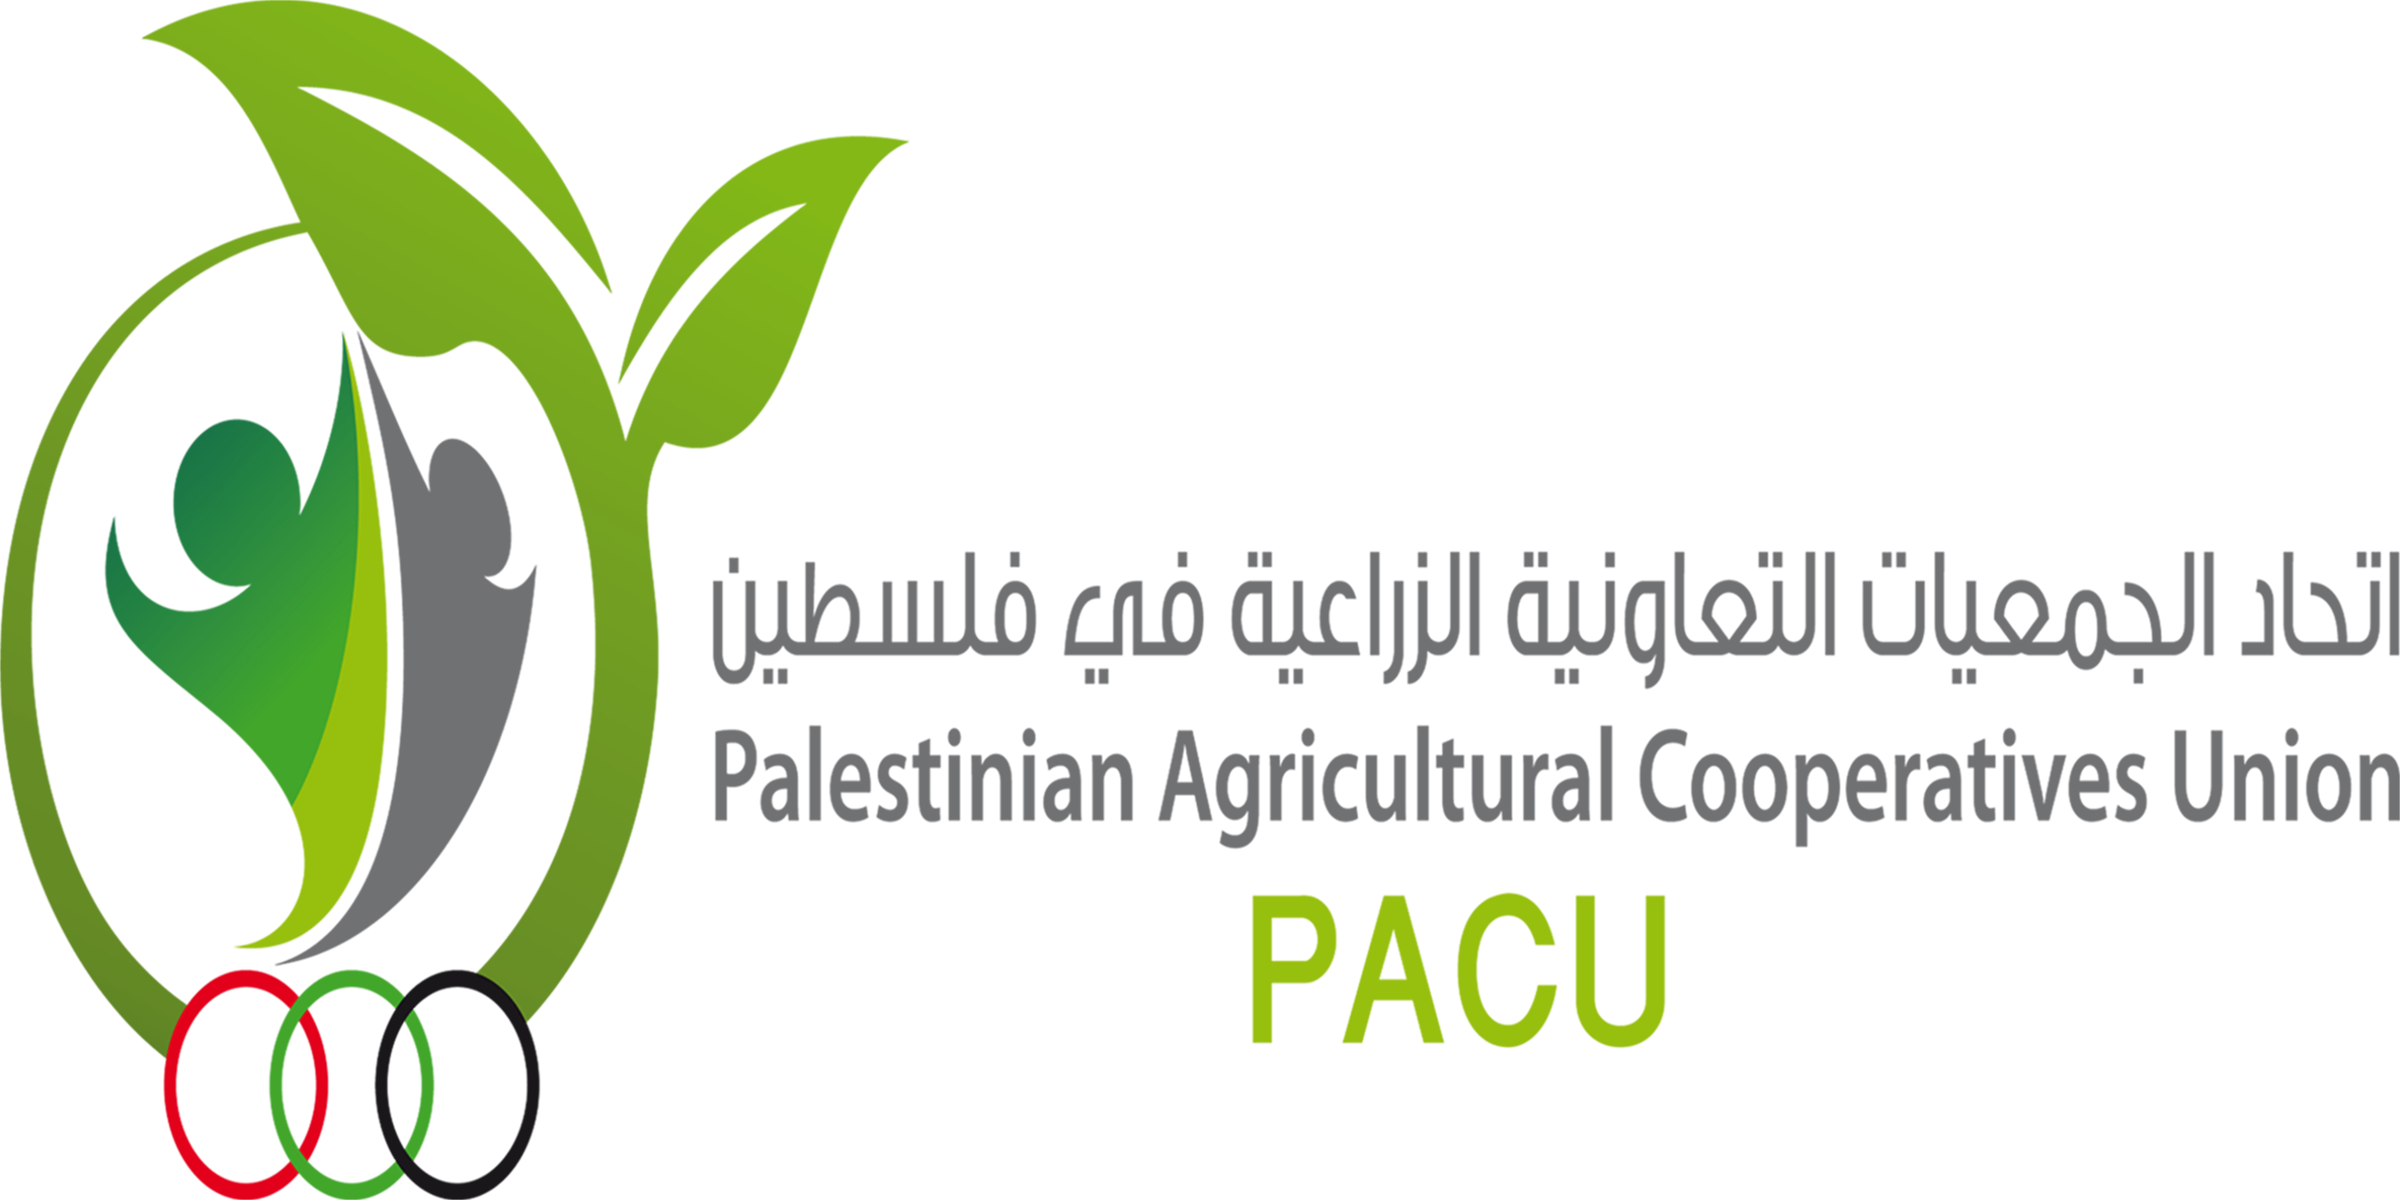 إتحاد الجمعيات التعاونية الزراعية في فلسطين(PACU)